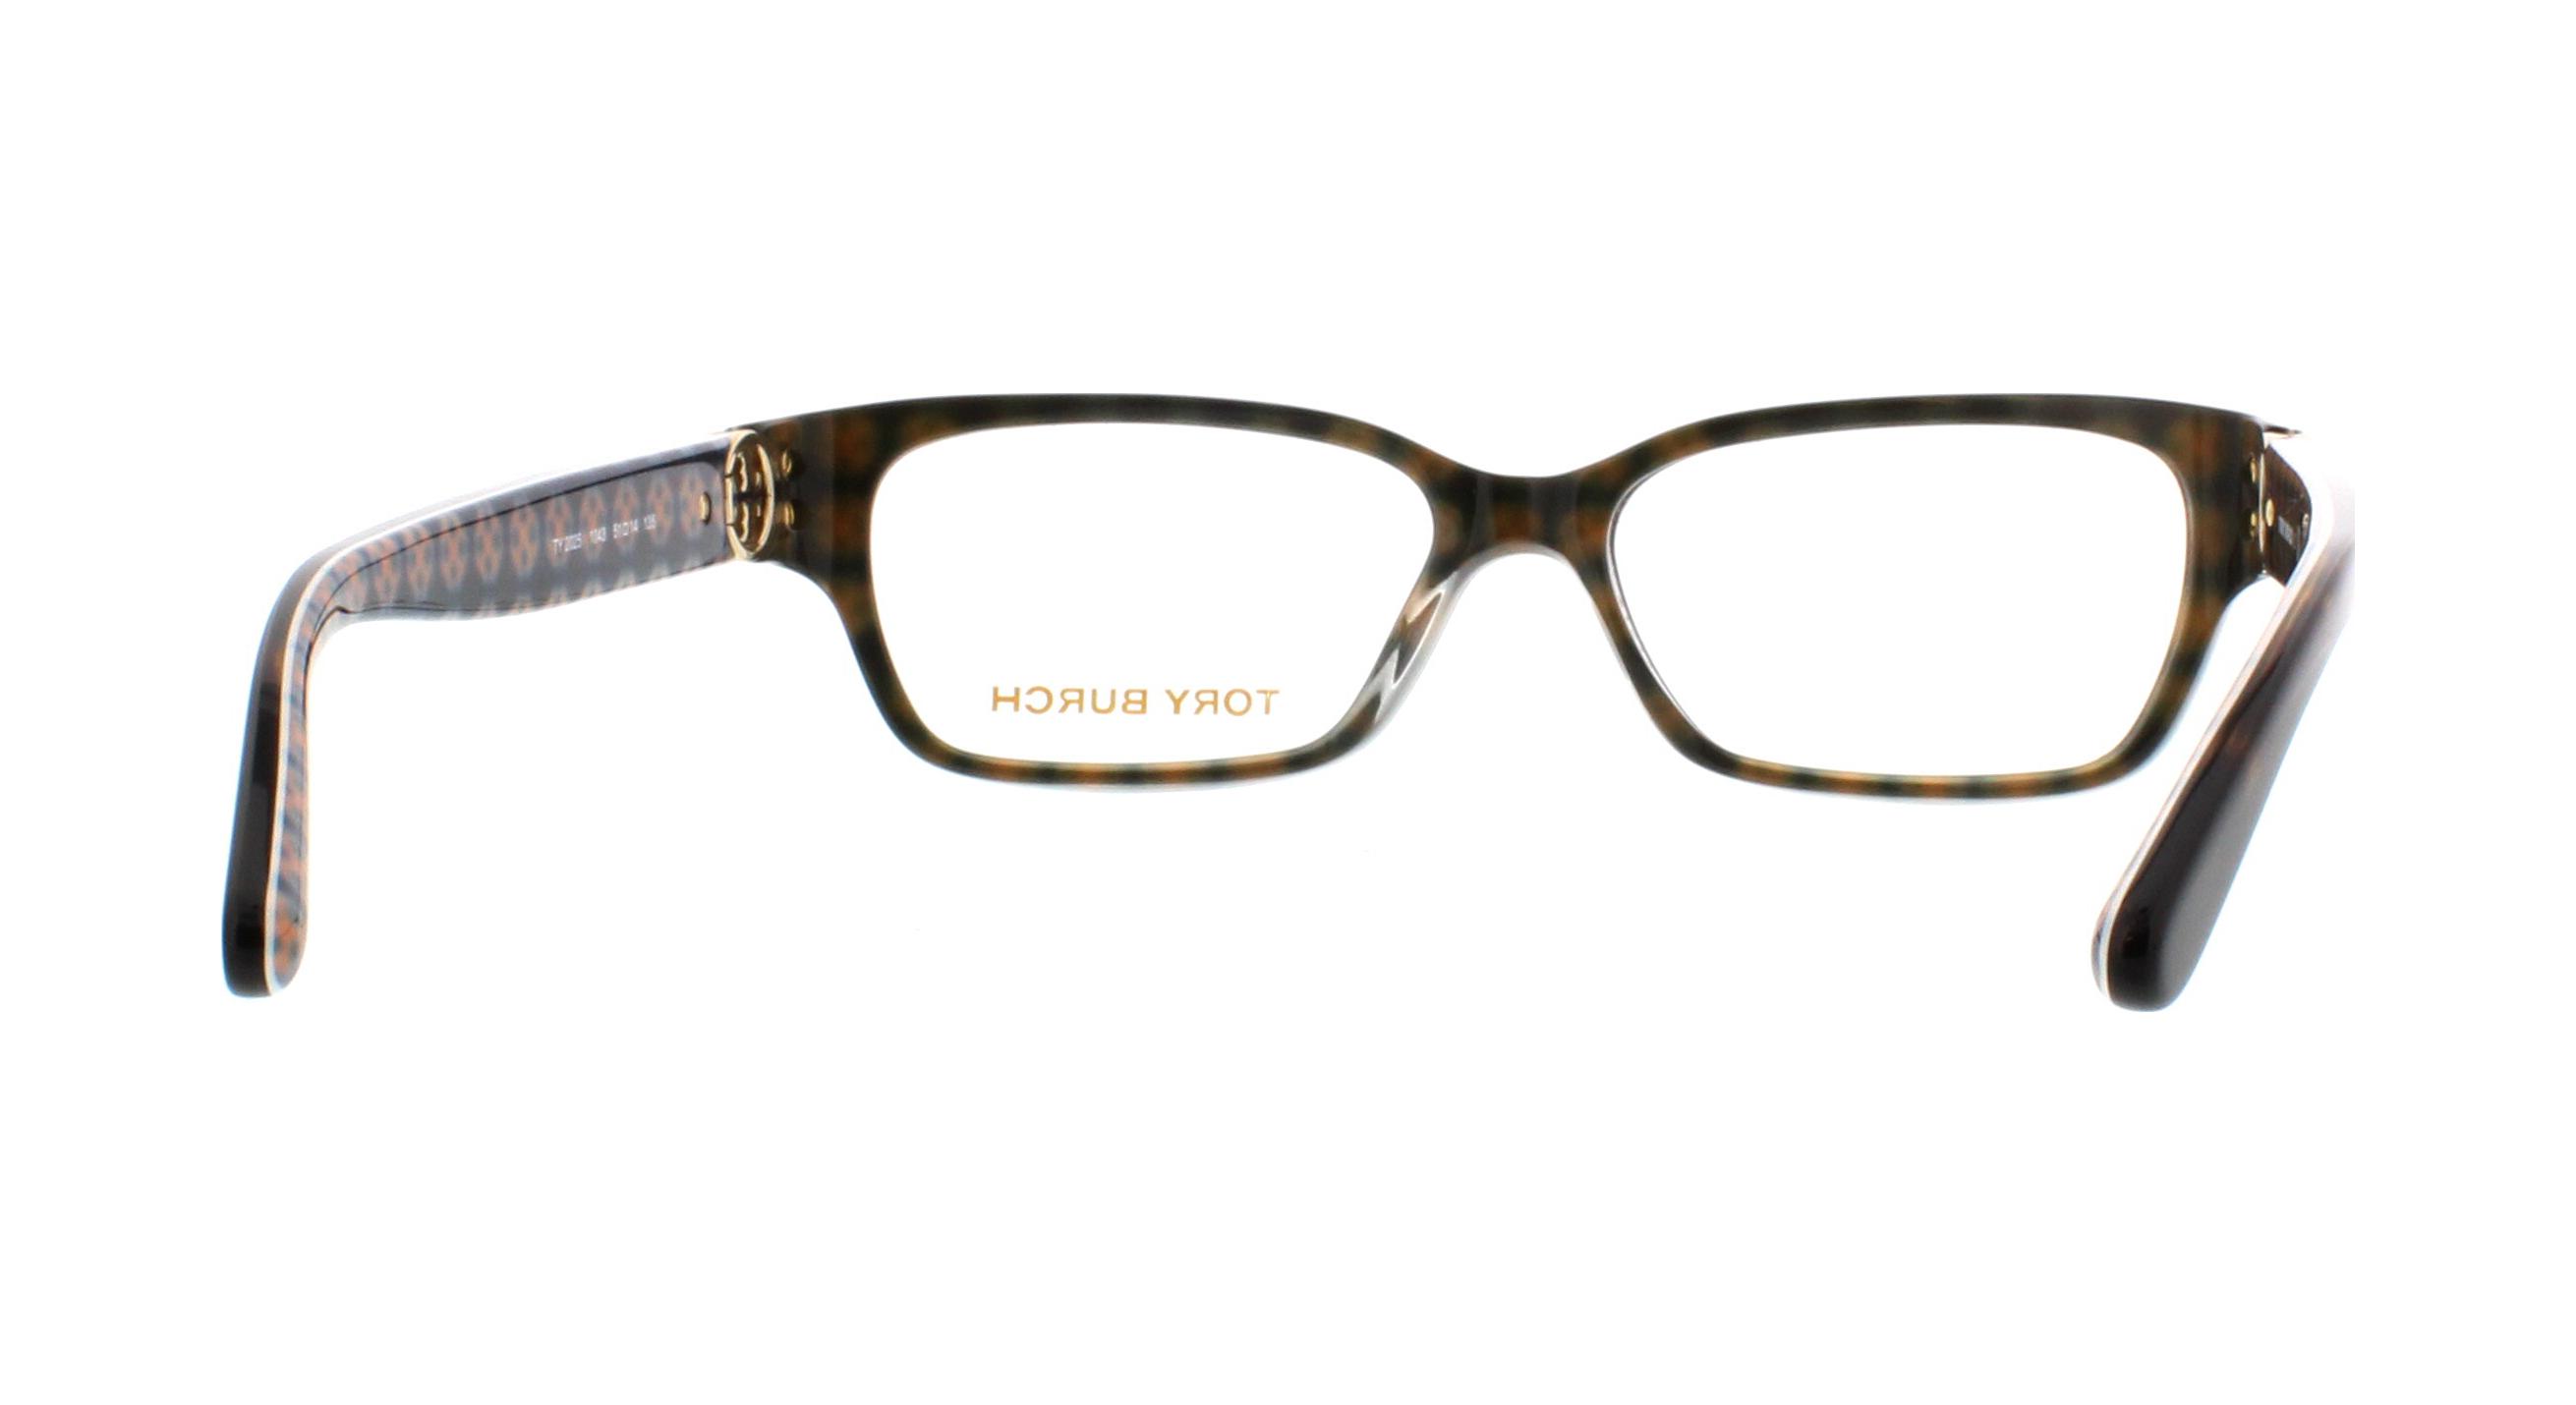 Designer Frames Outlet. Tory Burch Eyeglasses TY2025